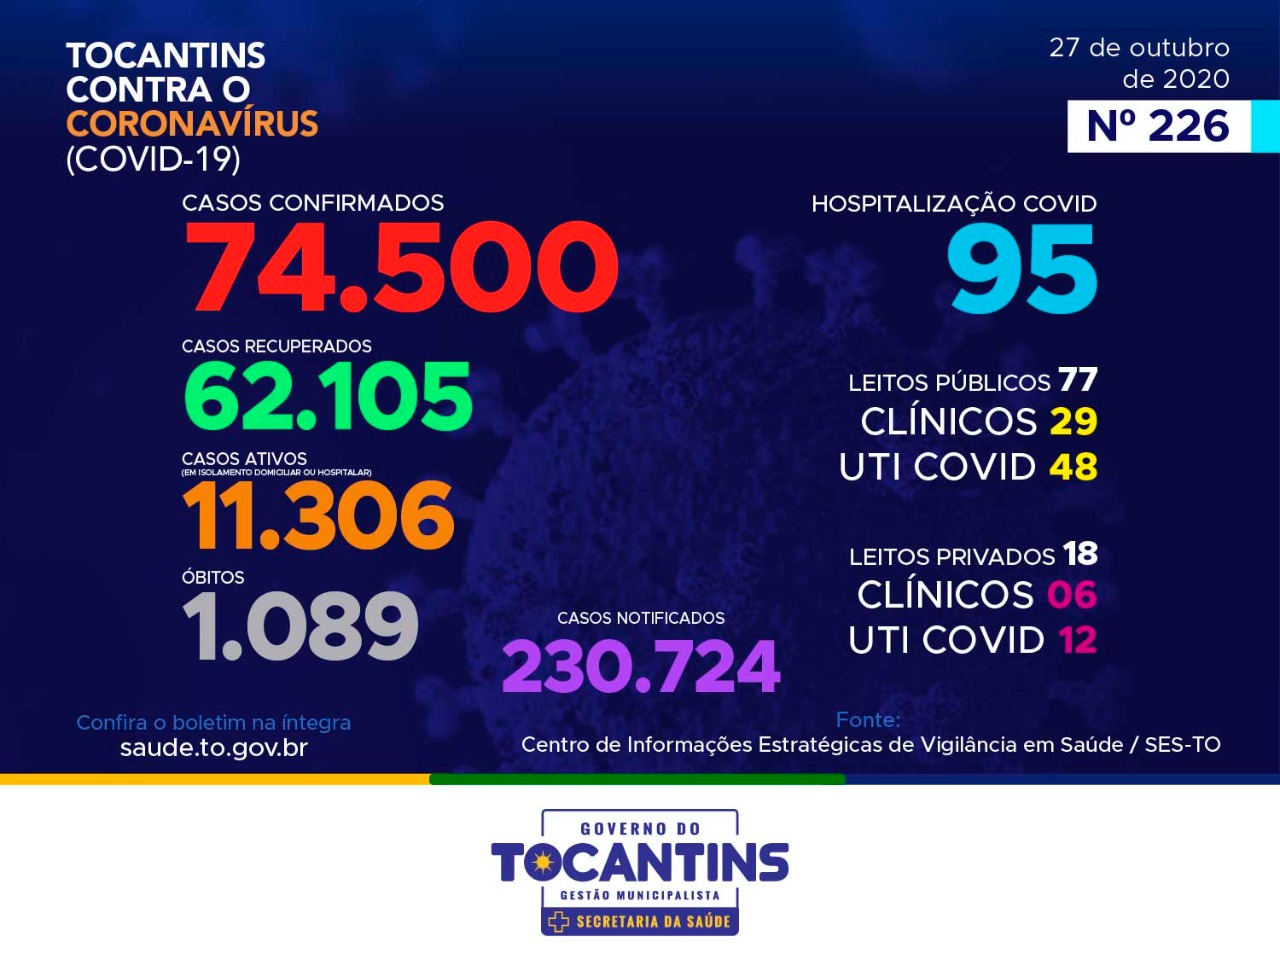 Coronavírus: com 282 novos casos hoje, Tocantins soma mais de 74 mil confirmações